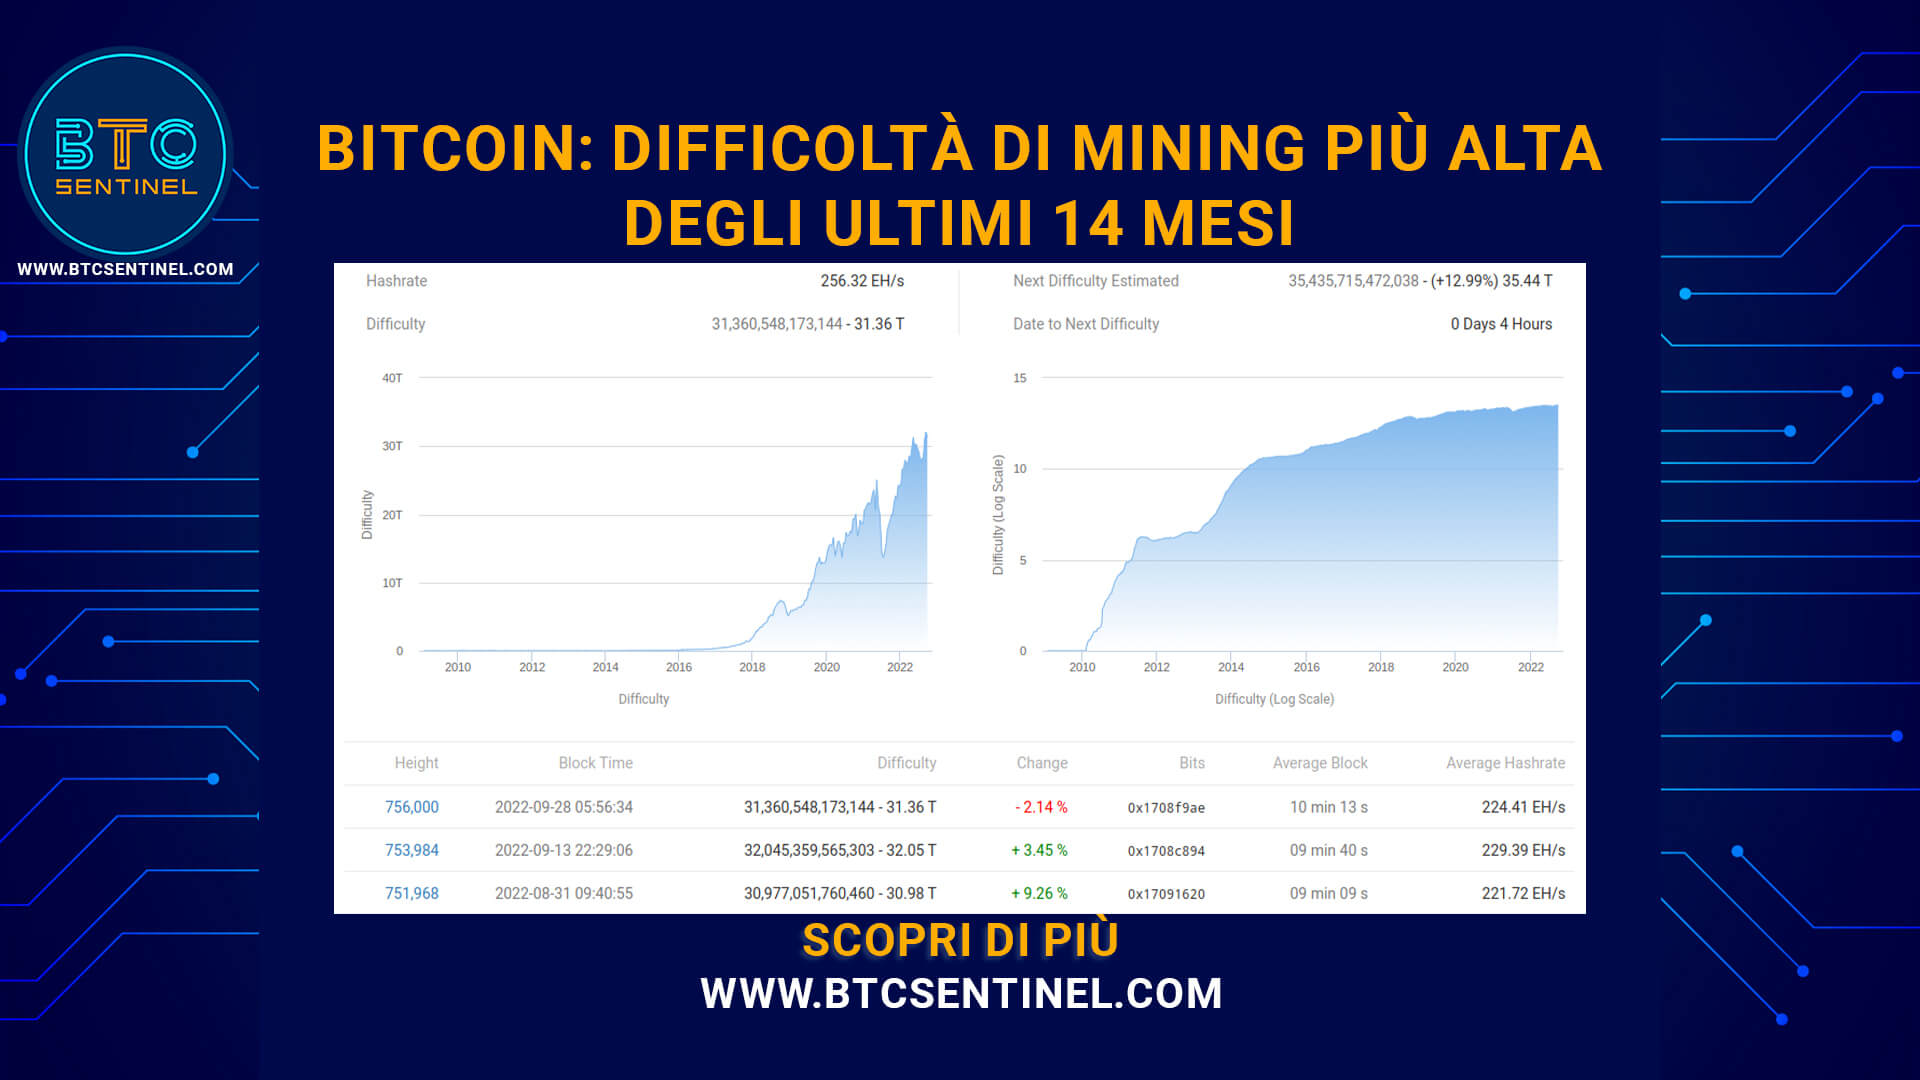 Bitcoin: il più alto picco di difficoltà di mining degli ultimi 14 mesi